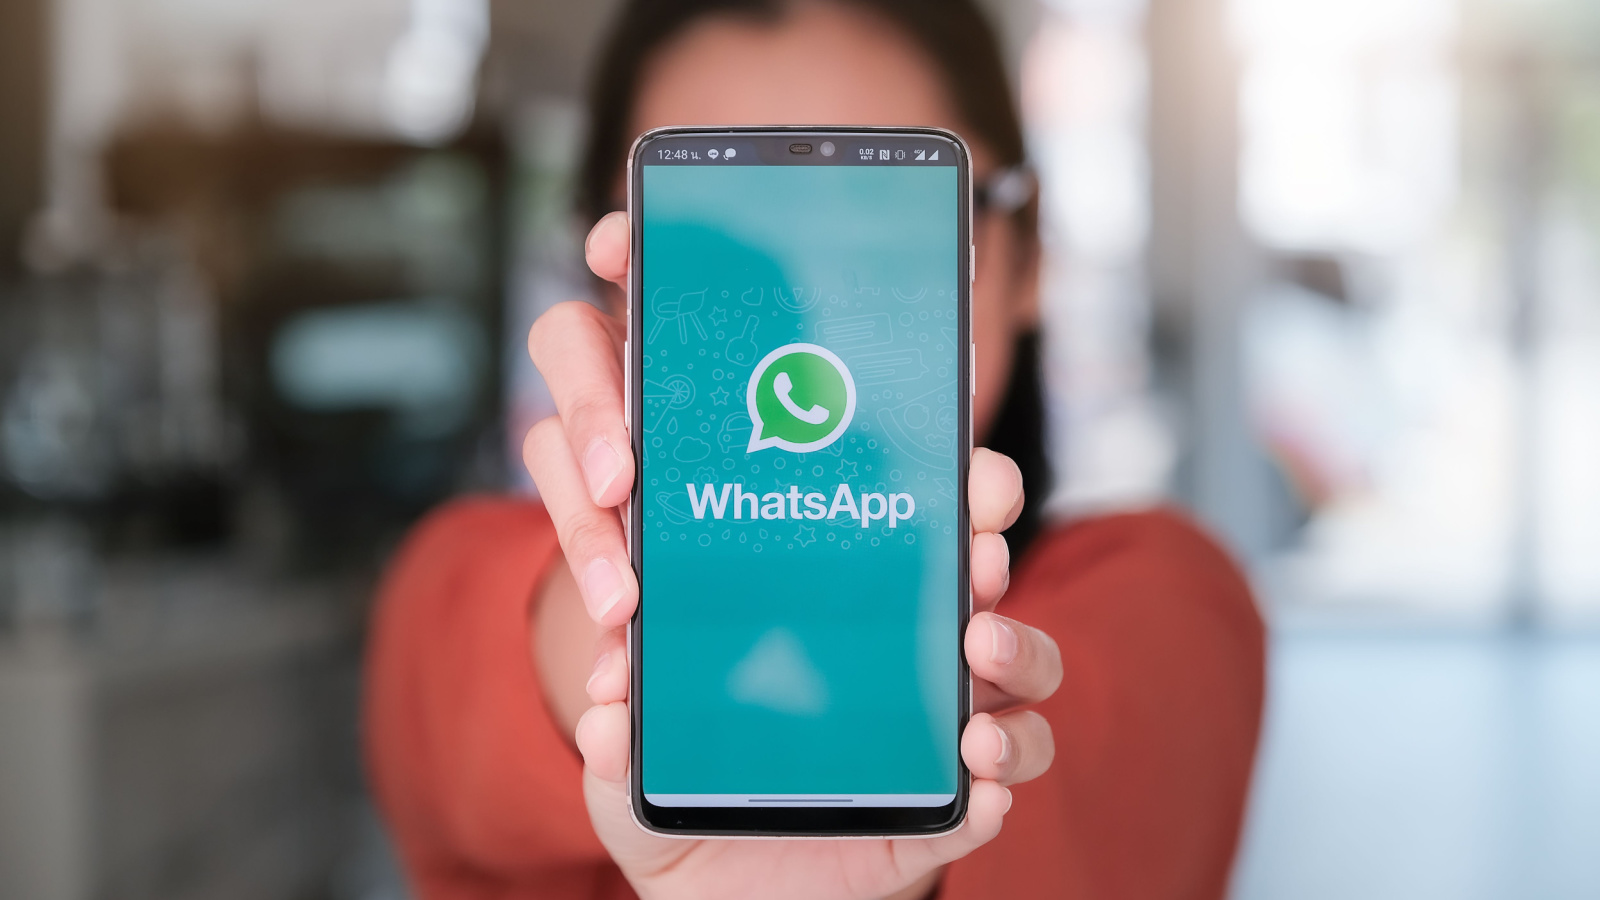 Scopri come rendere unico ogni messaggio su WhatsApp utilizzando caratteri speciali e formattazioni avanzate